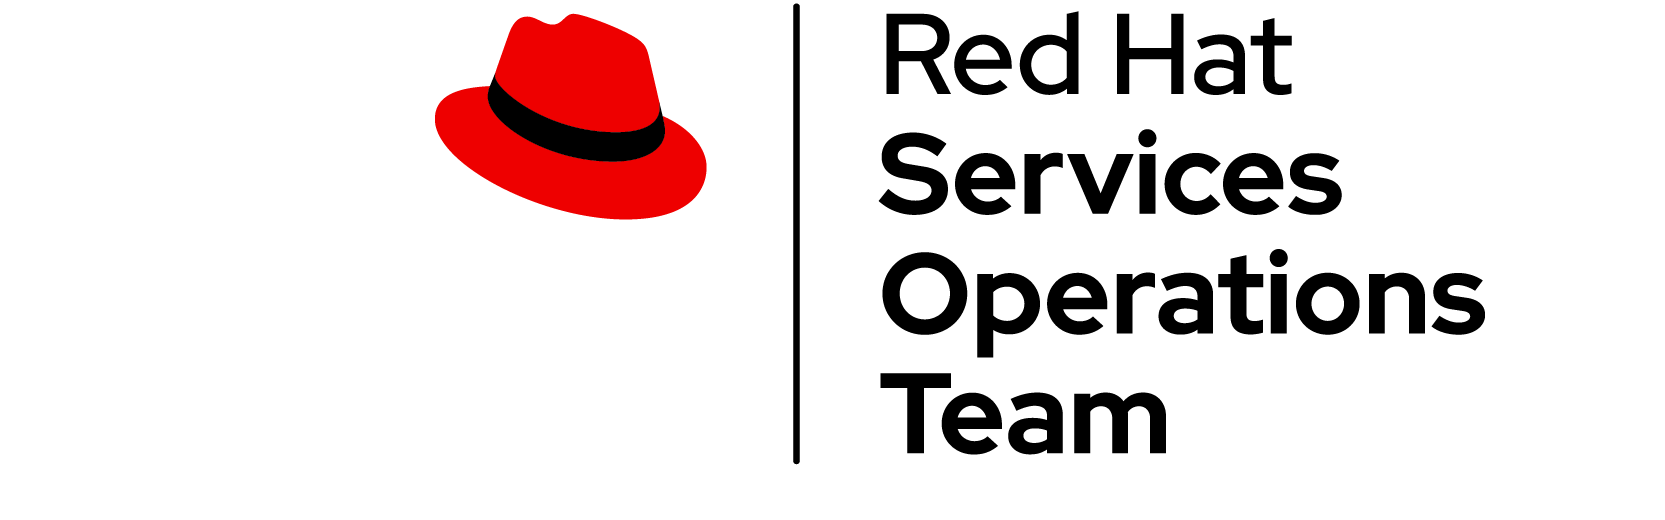 Red Hat team logo